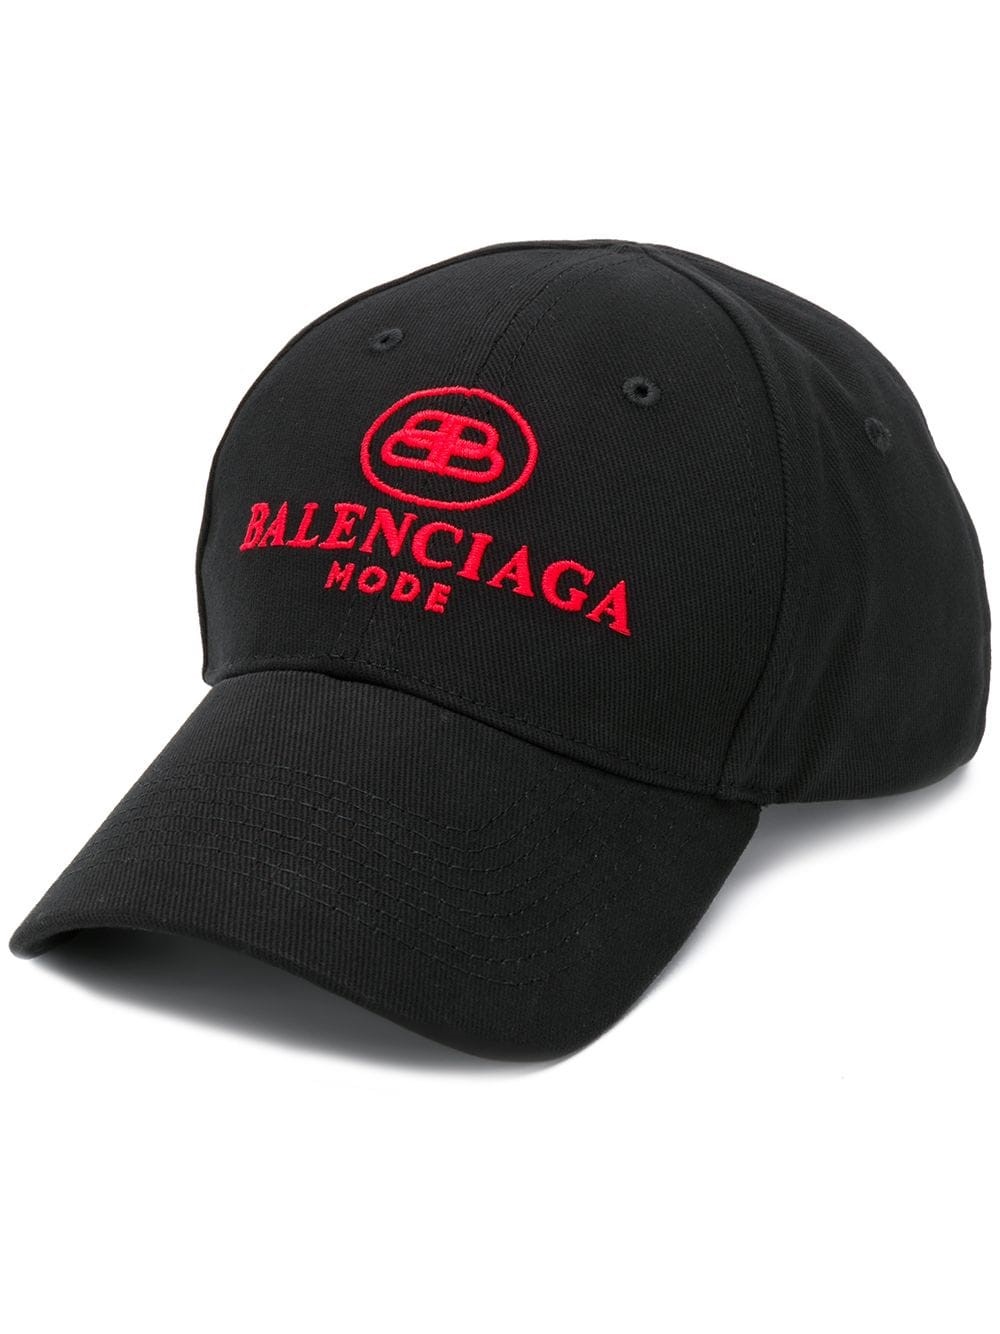 balenciaga LOGO BASEBALL CAP available on montiboutique.com - 29484